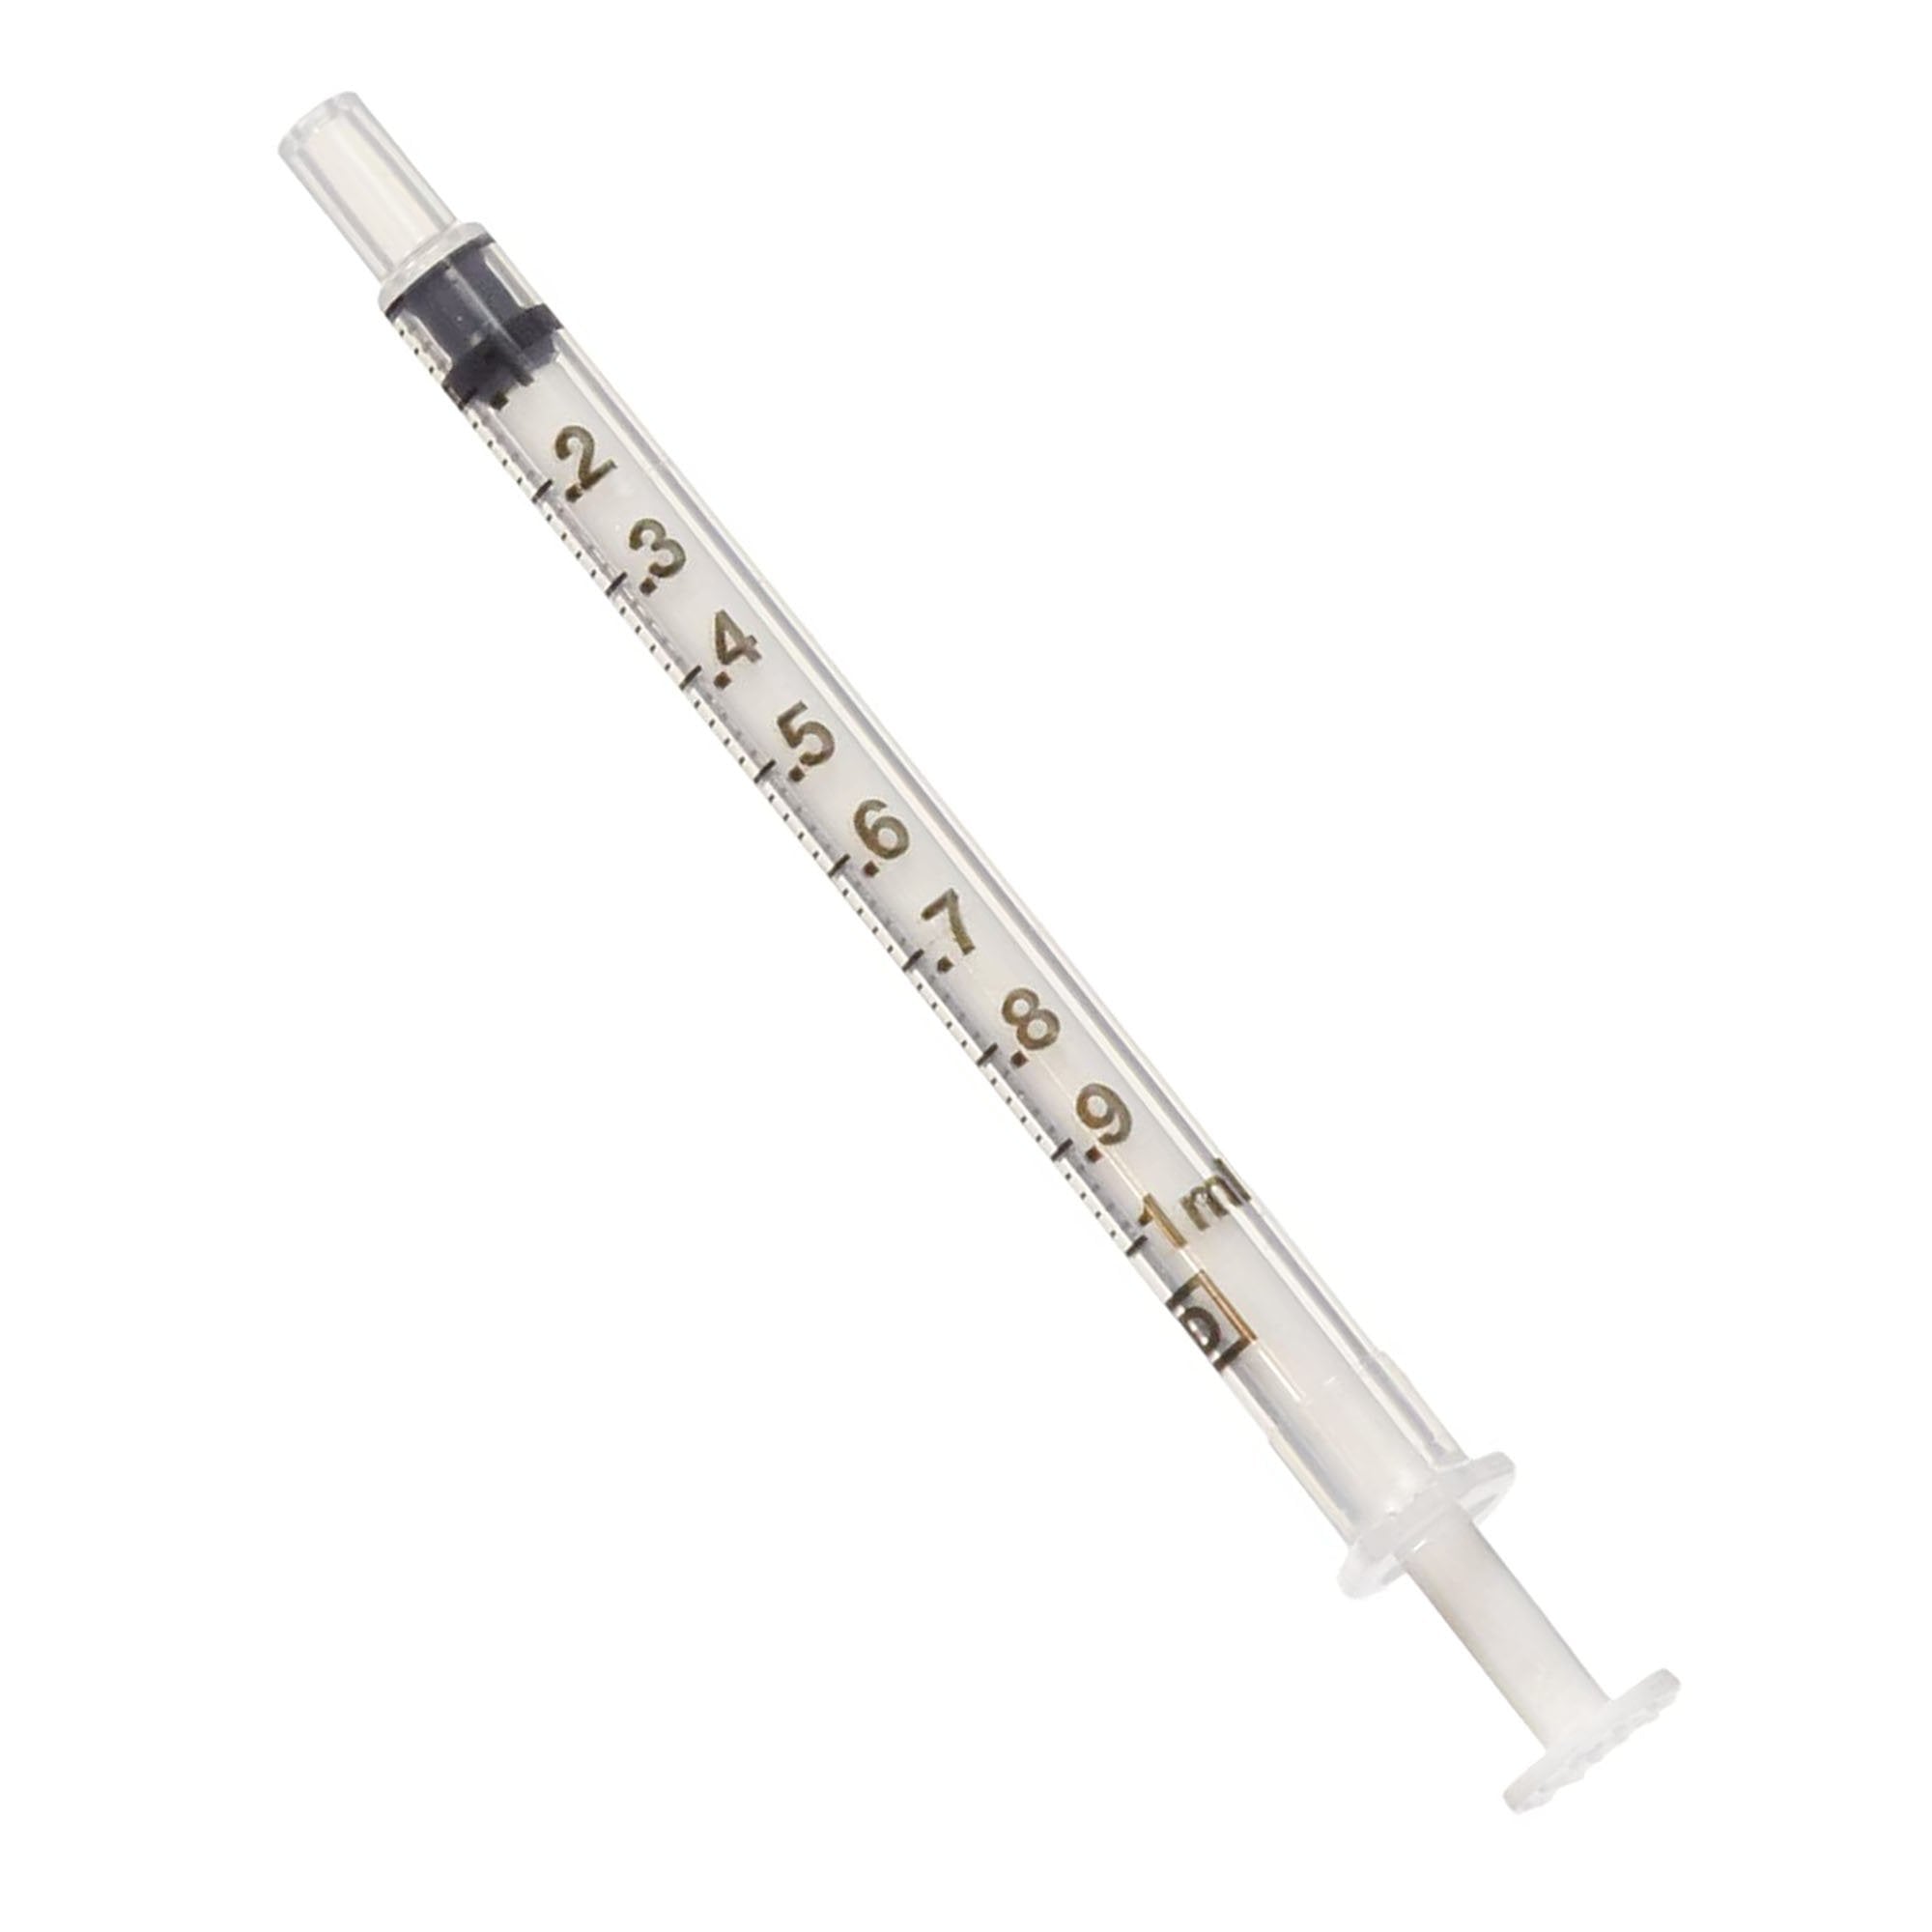 Oral Syringe (100 Syringes)